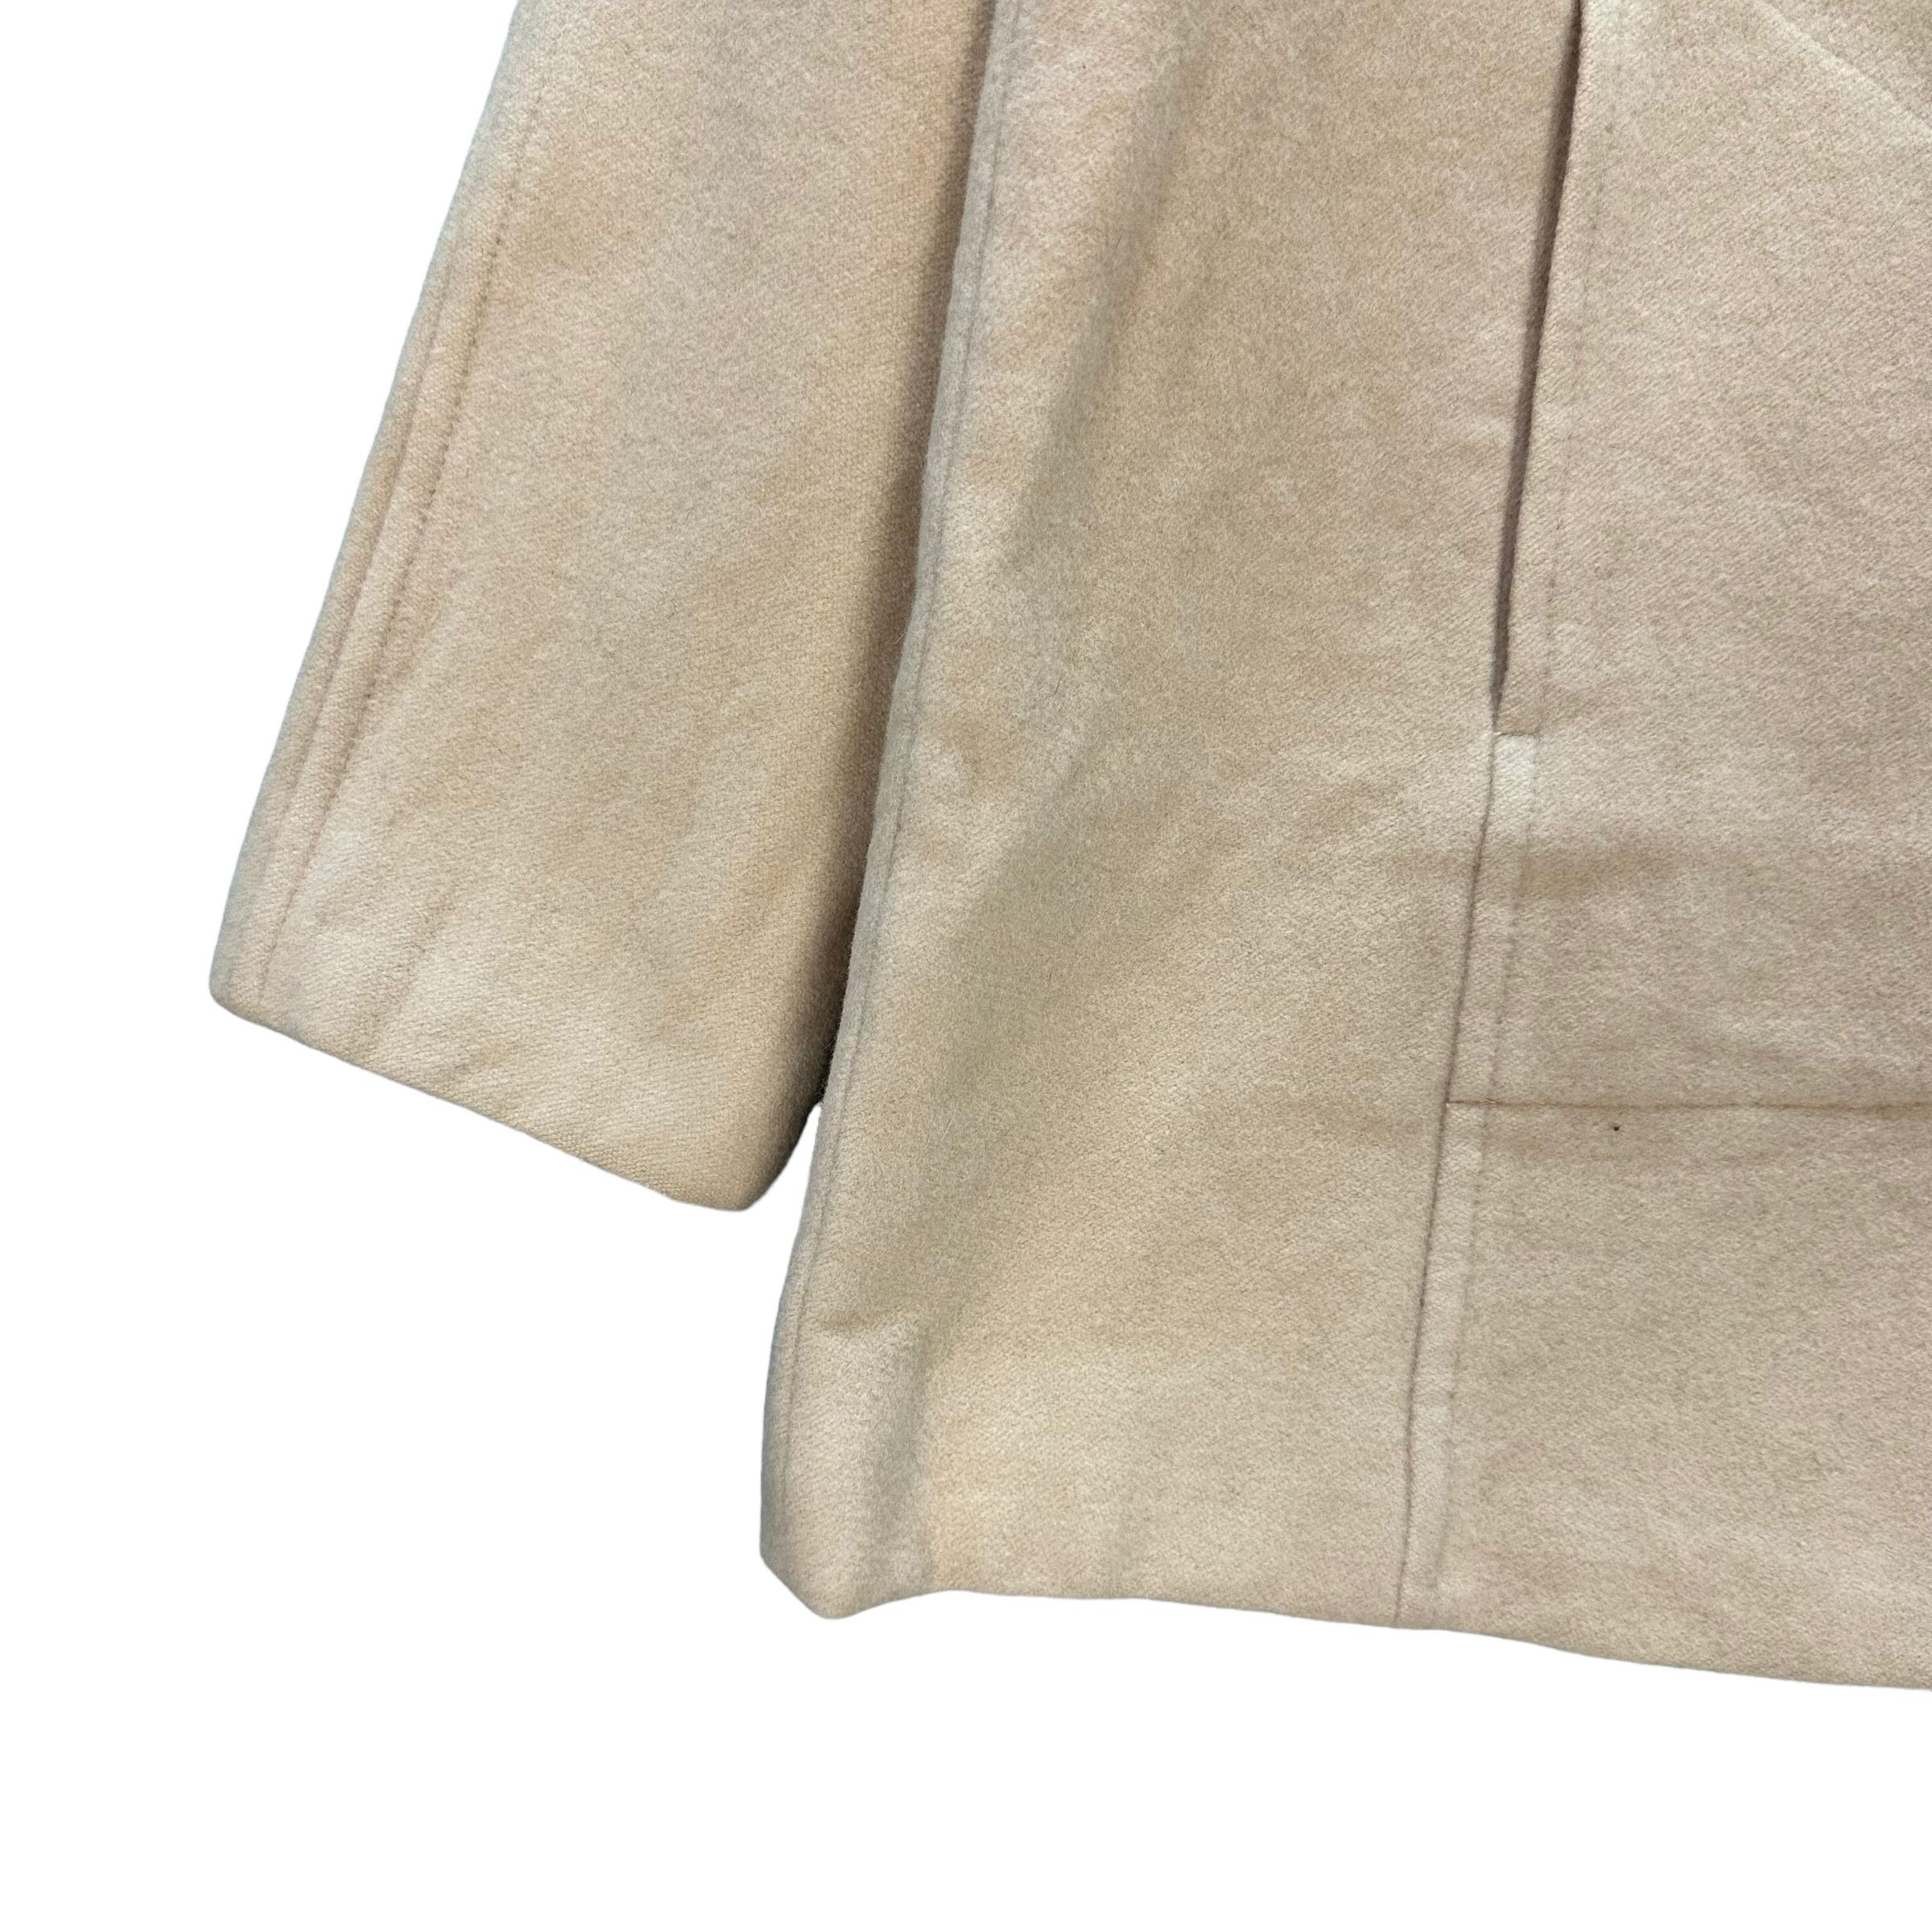 Vintage - Sonia Rykiel Wool Blend Coat Jacket #9117-58 - 5